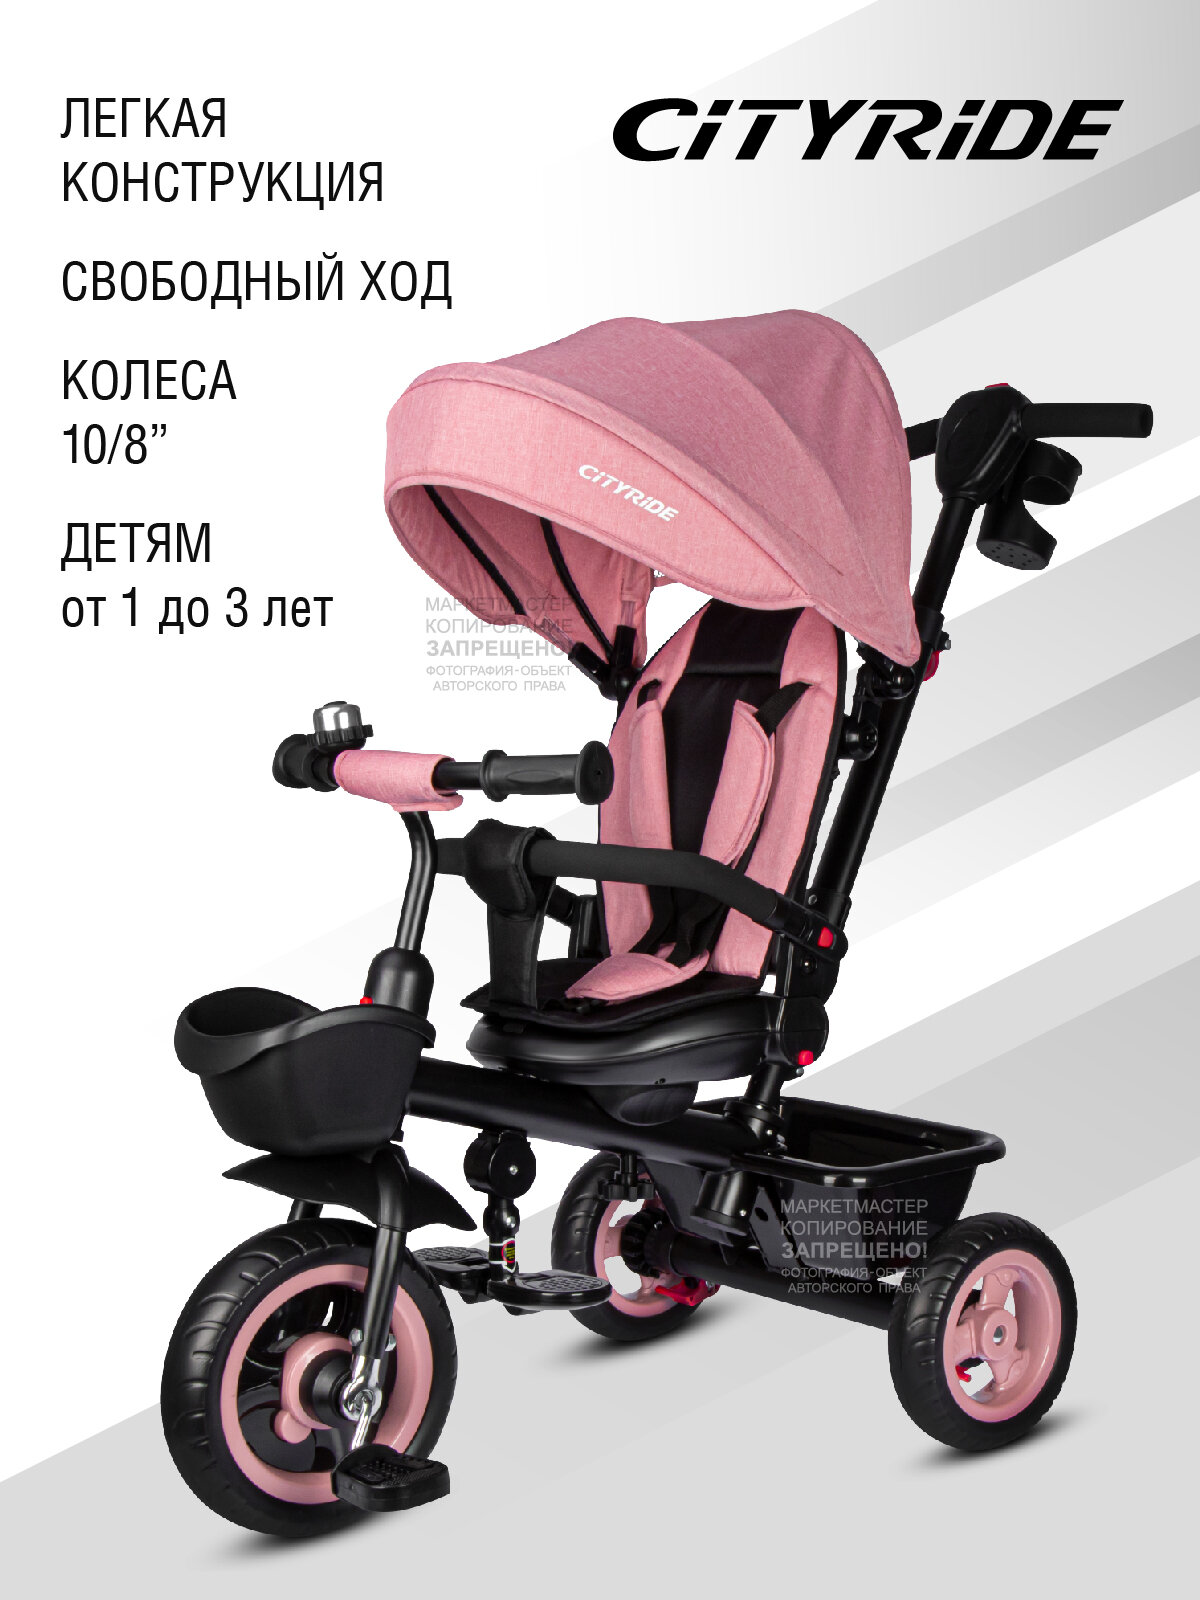 Велосипед детский трехколесный ТМ CITYRIDE, колеса ЕВА 10"/8", 3 уровня наклона спинки, подстаканник, передняя корзина для игрушек, CR-B3-08PK